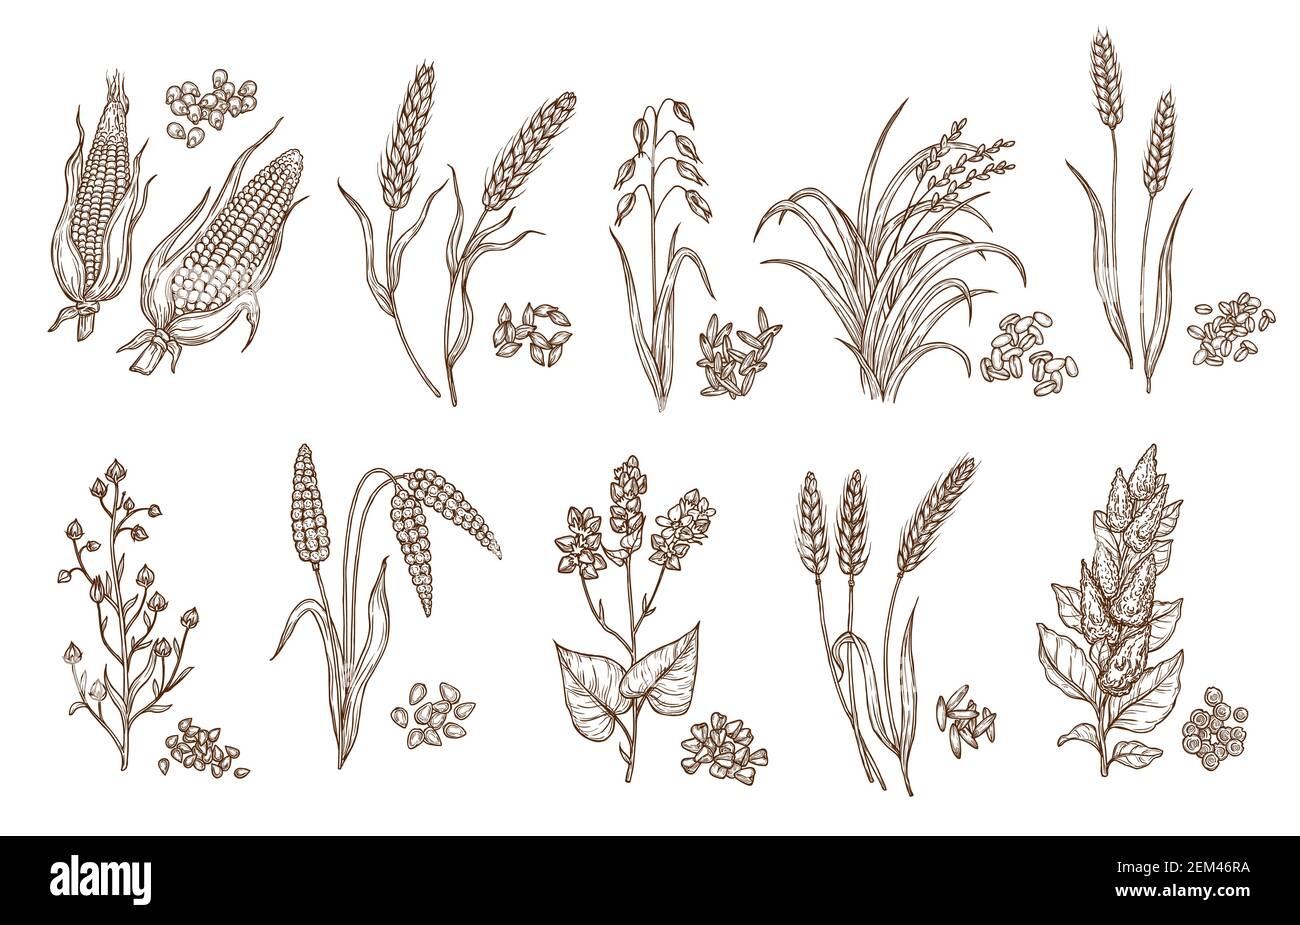 Getreide Getreide und Pflanzen isolierte Skizzen der Landwirtschaft Ernte  und Lebensmittel-Vektor-Design. Samen von Weizen, Hafer, Gerste und Mais,  Reis, Buchweizen, Roggen, qu Stock-Vektorgrafik - Alamy